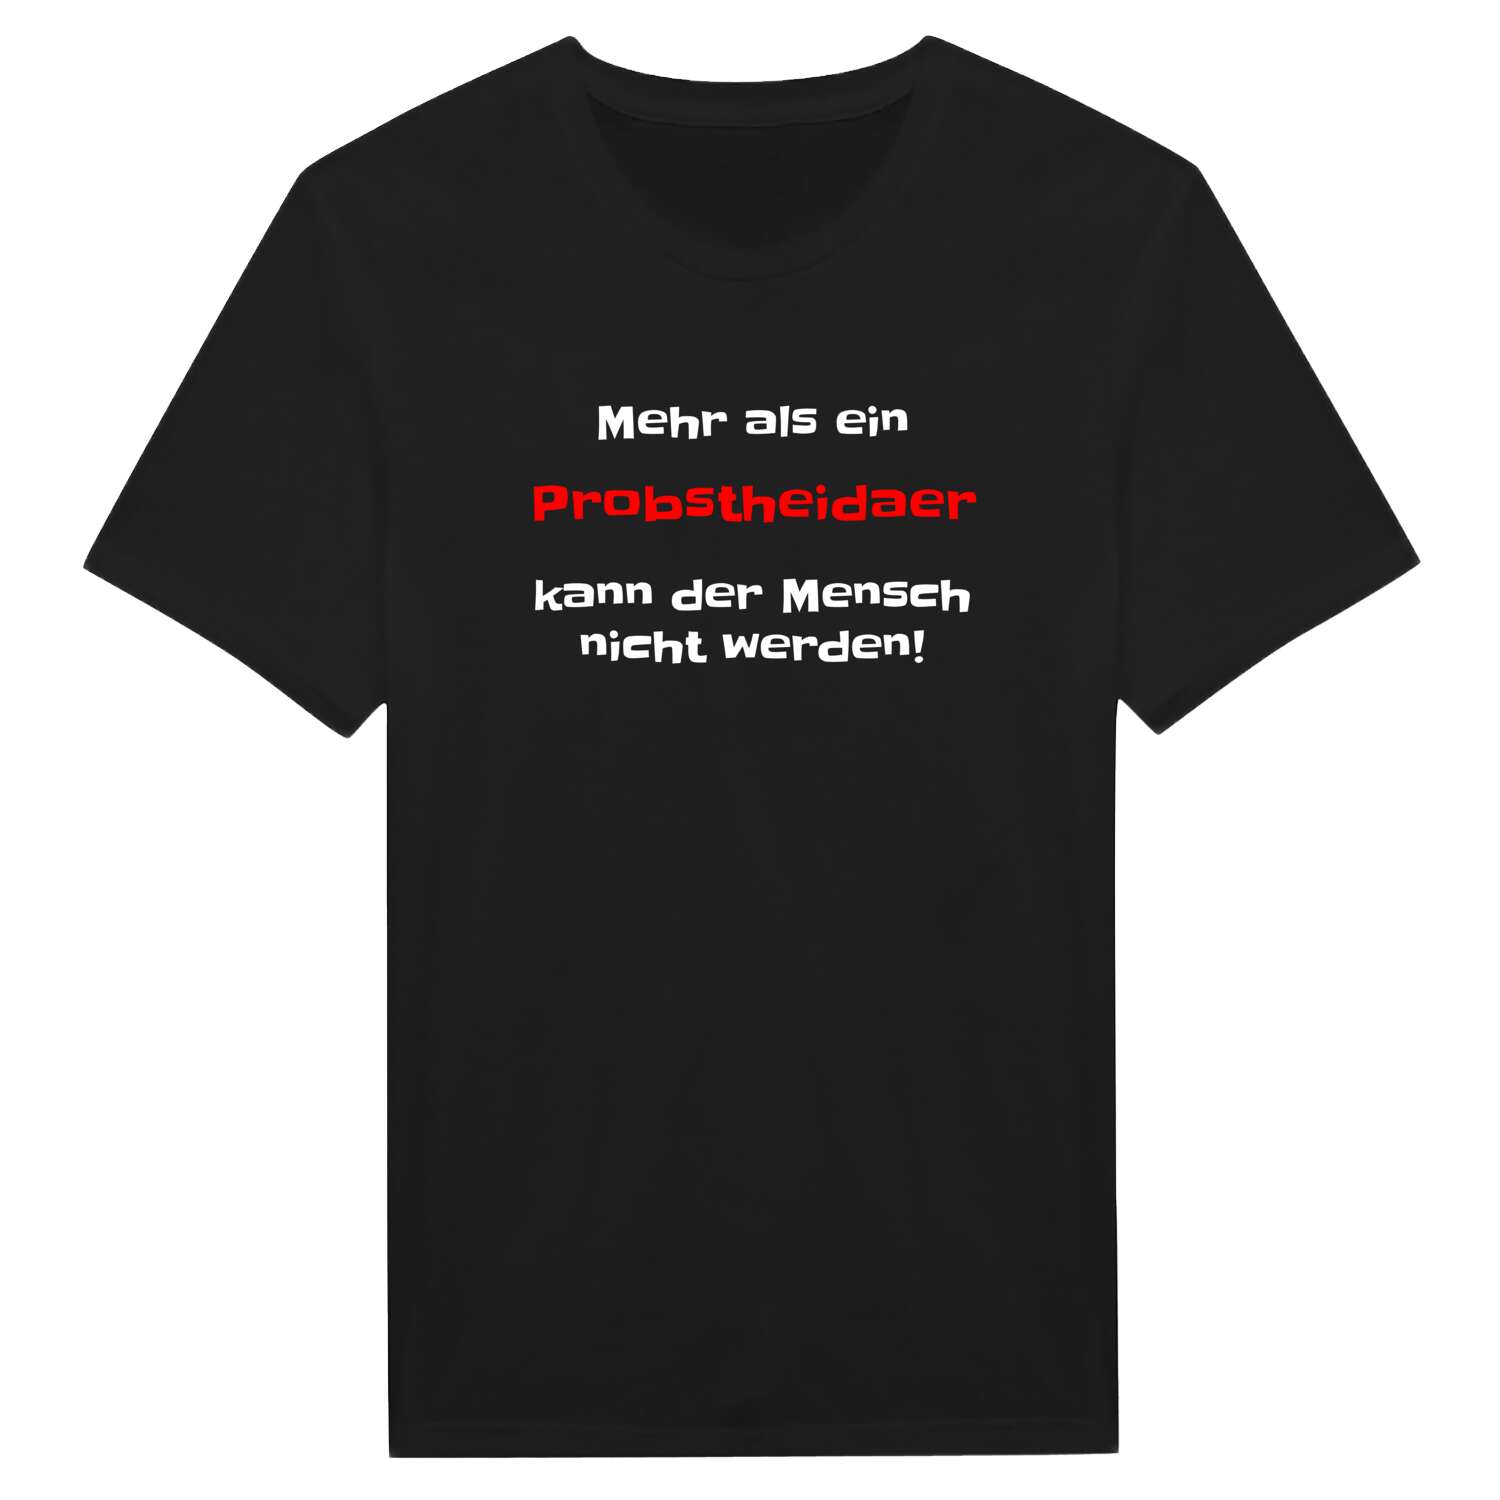 Probstheida T-Shirt »Mehr als ein«